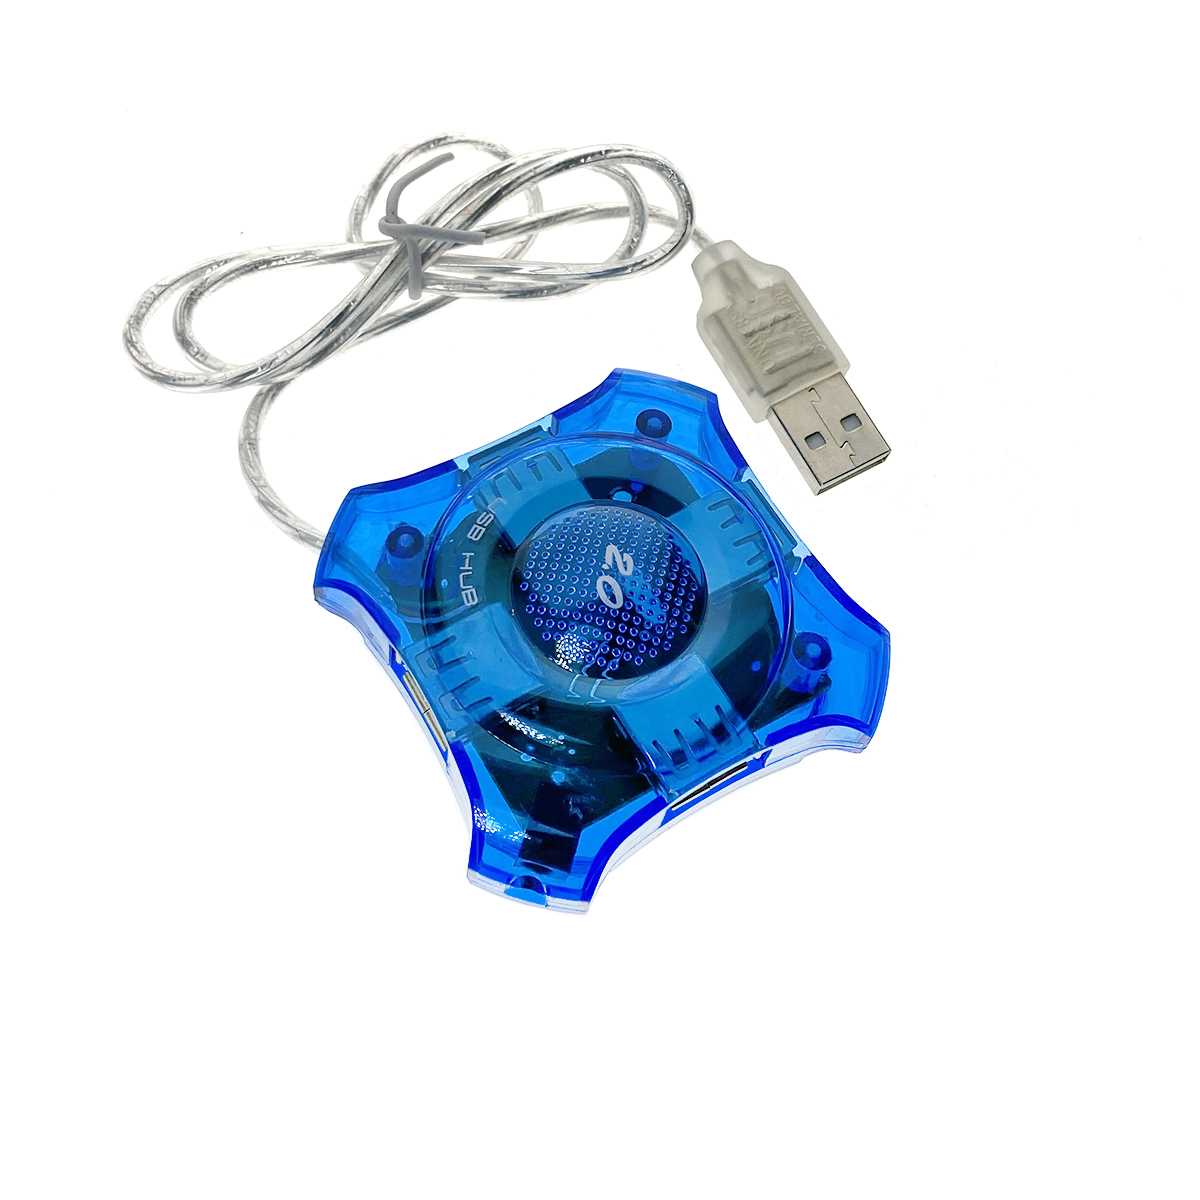 Разветвитель USB 2.0 - 4 порта, Eh420, голубой, длина кабеля 60см, хаб Espada